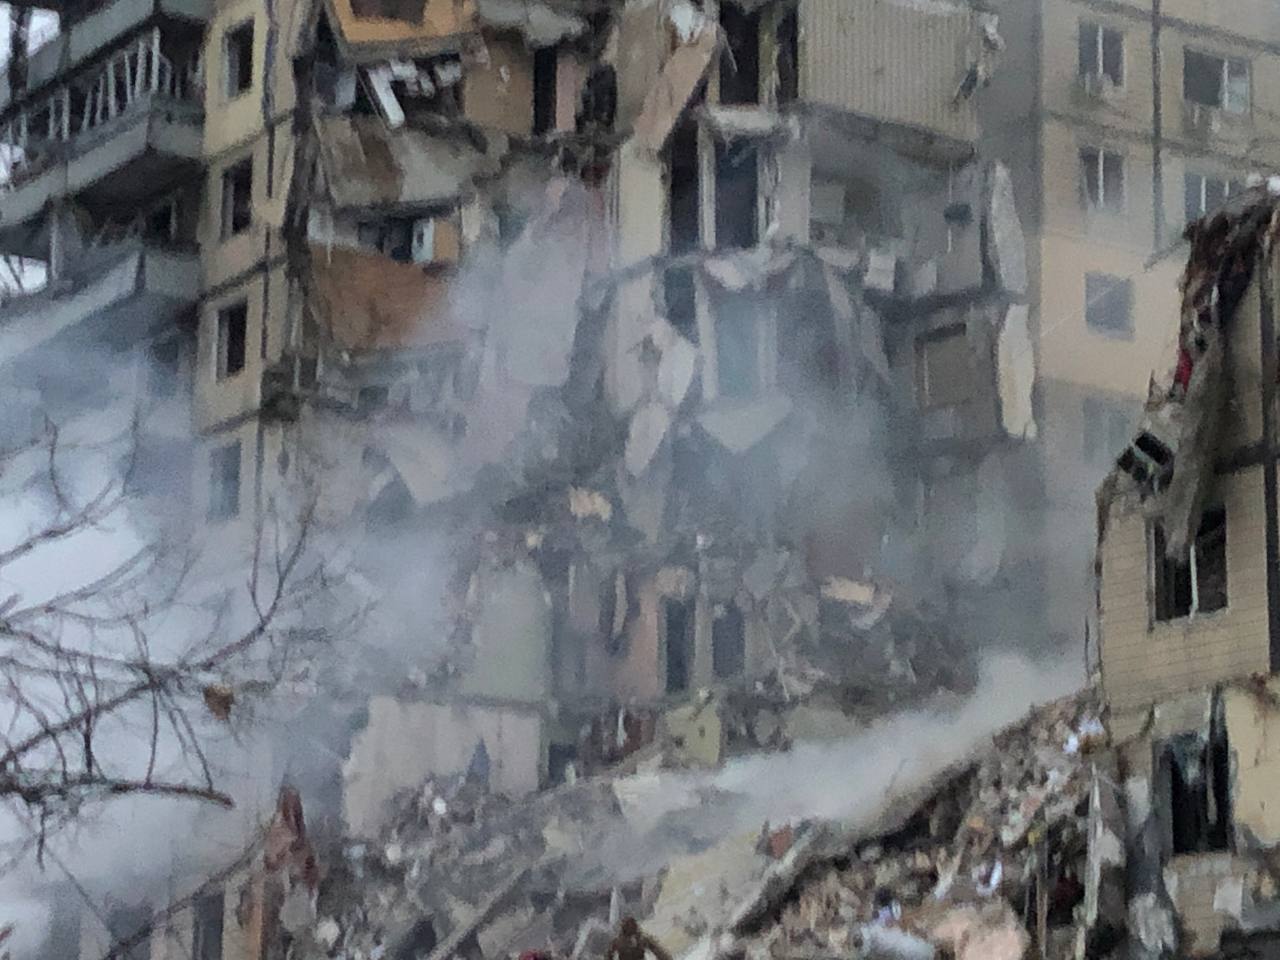 FOTO Cinci persoane au murit în orașul Dnepr din Ucraina. Noi imagini de la fața locului 